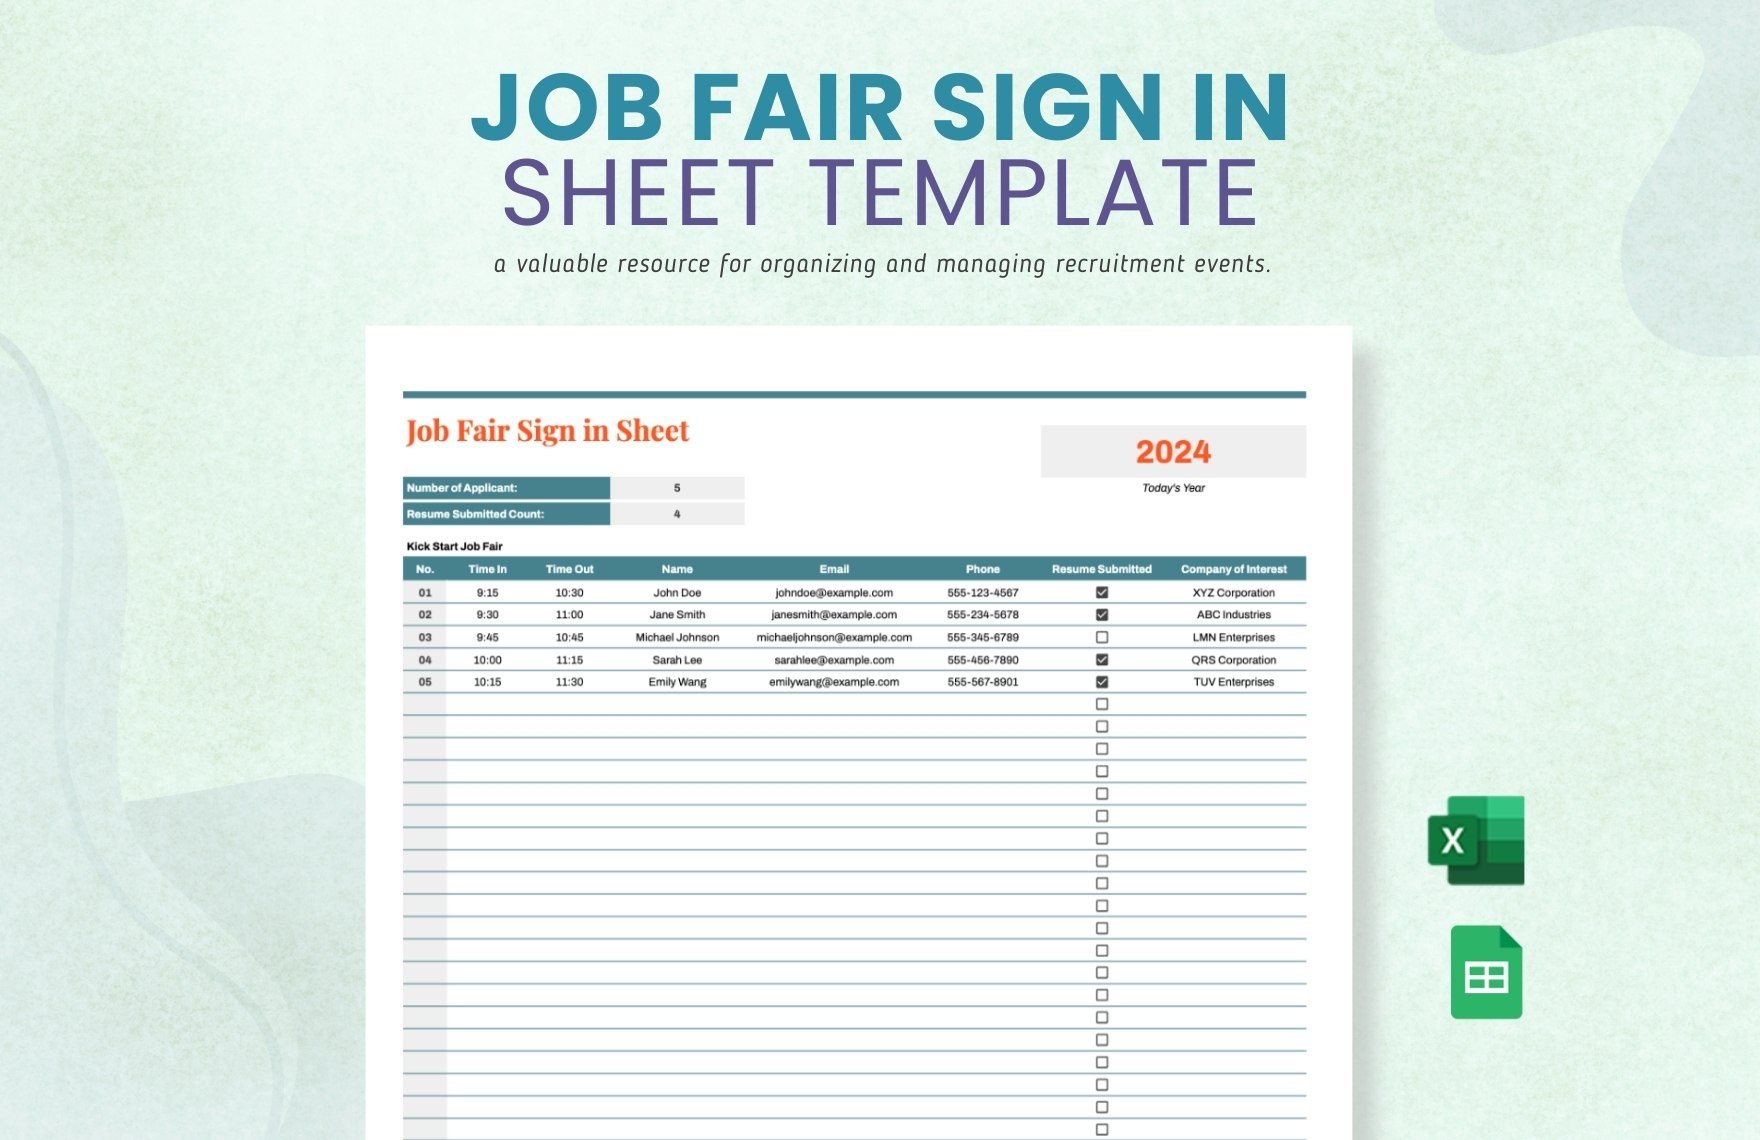 Job Fair Sign in Sheet Template